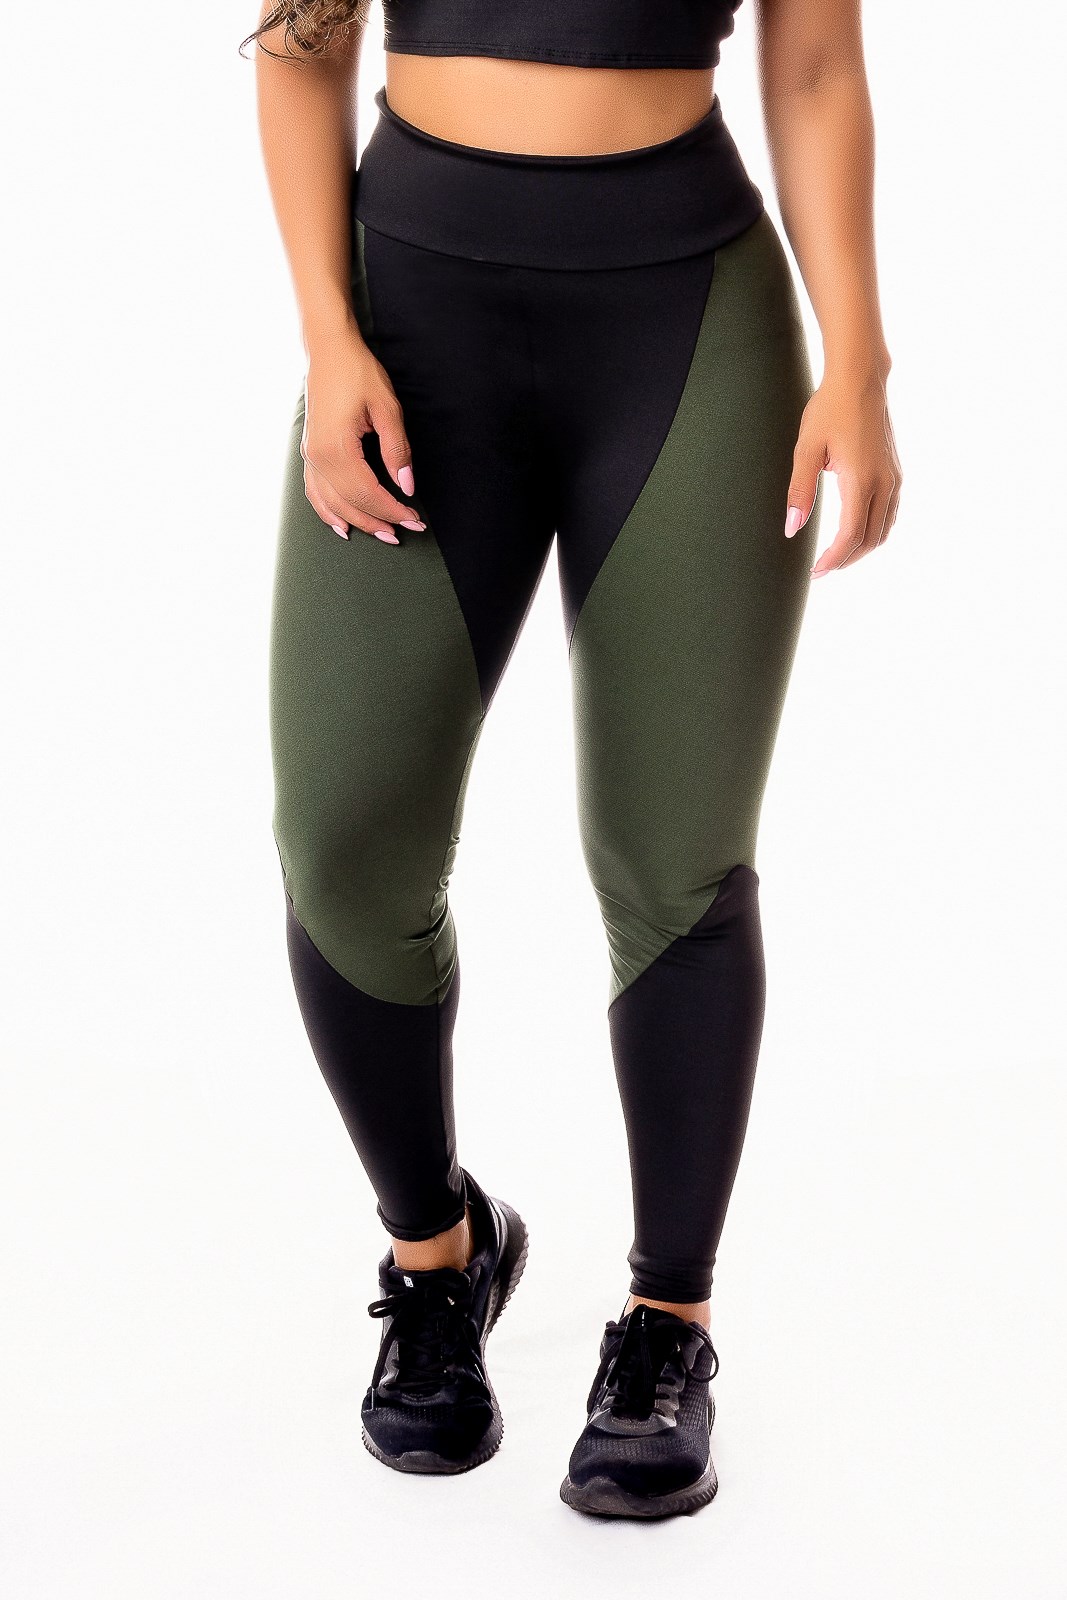 Conjunto Fitness Feminino Calça Legging Levanta Bumbum Preta com Verde  Militar e Branco Cintura Alta e Cropped Alcinha Academia REF: CSV17 - Racy  Modas